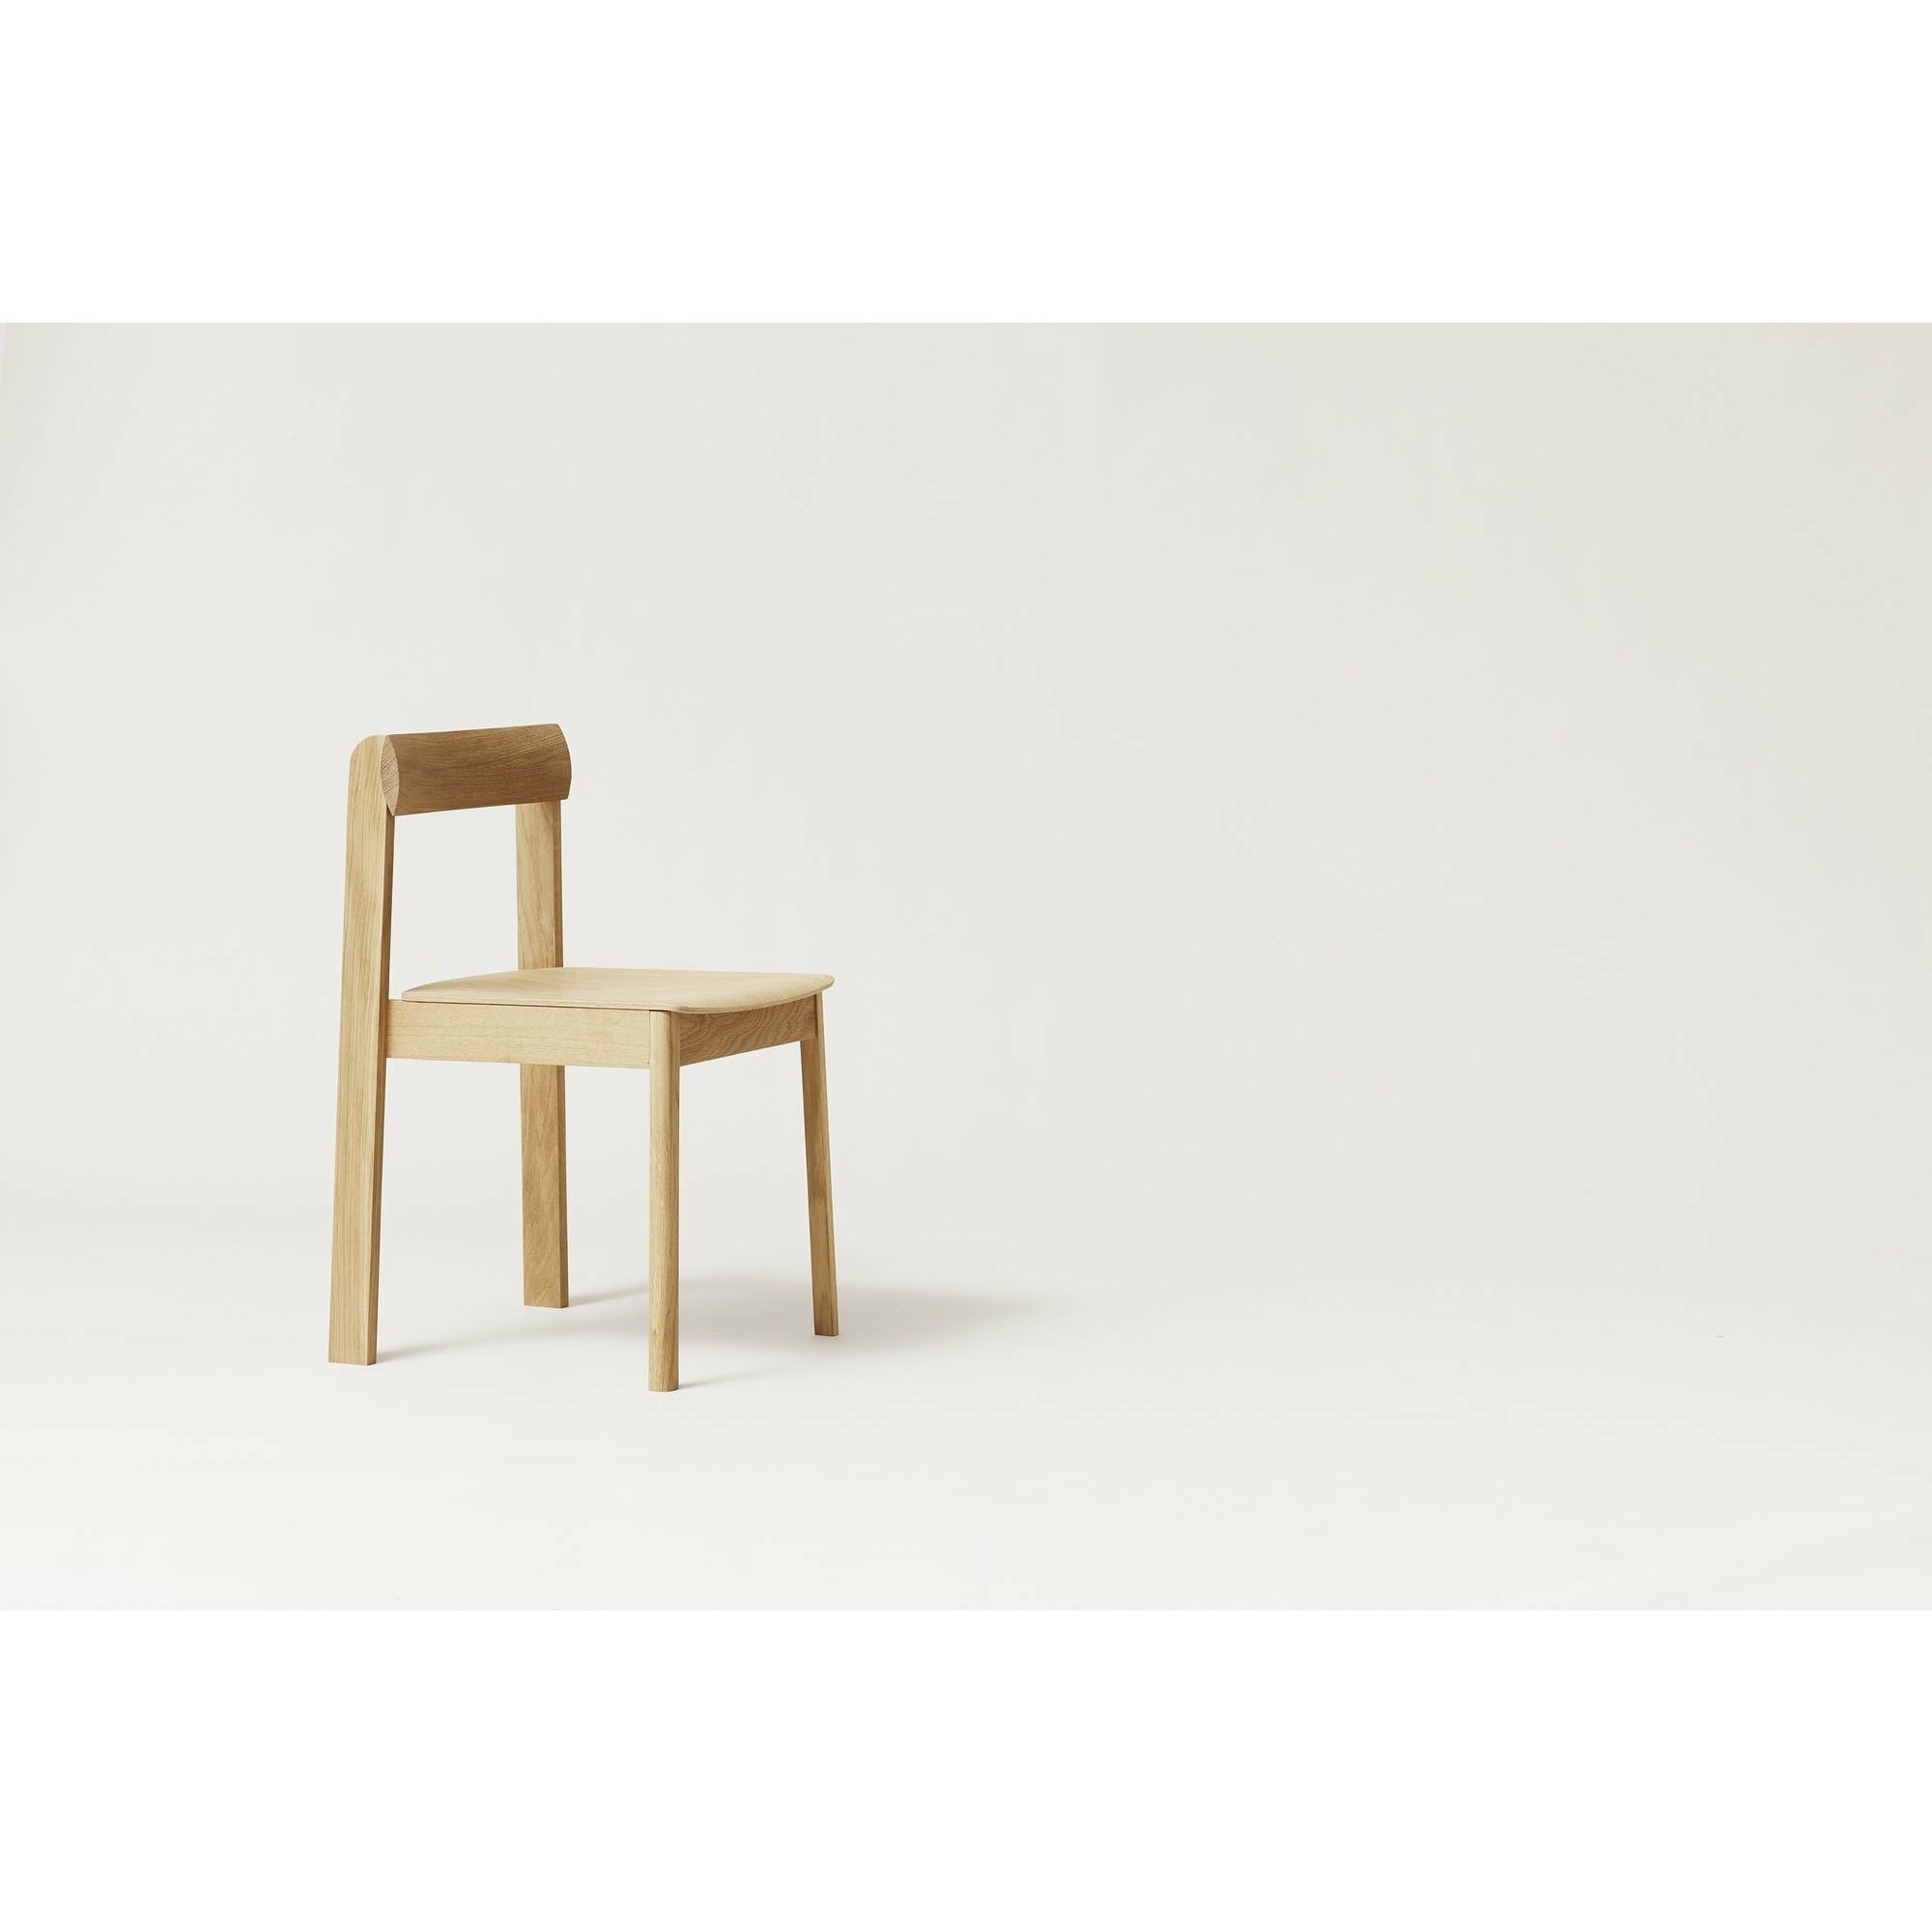 Forma e perfezionamento della sedia del progetto. Quercia bianca